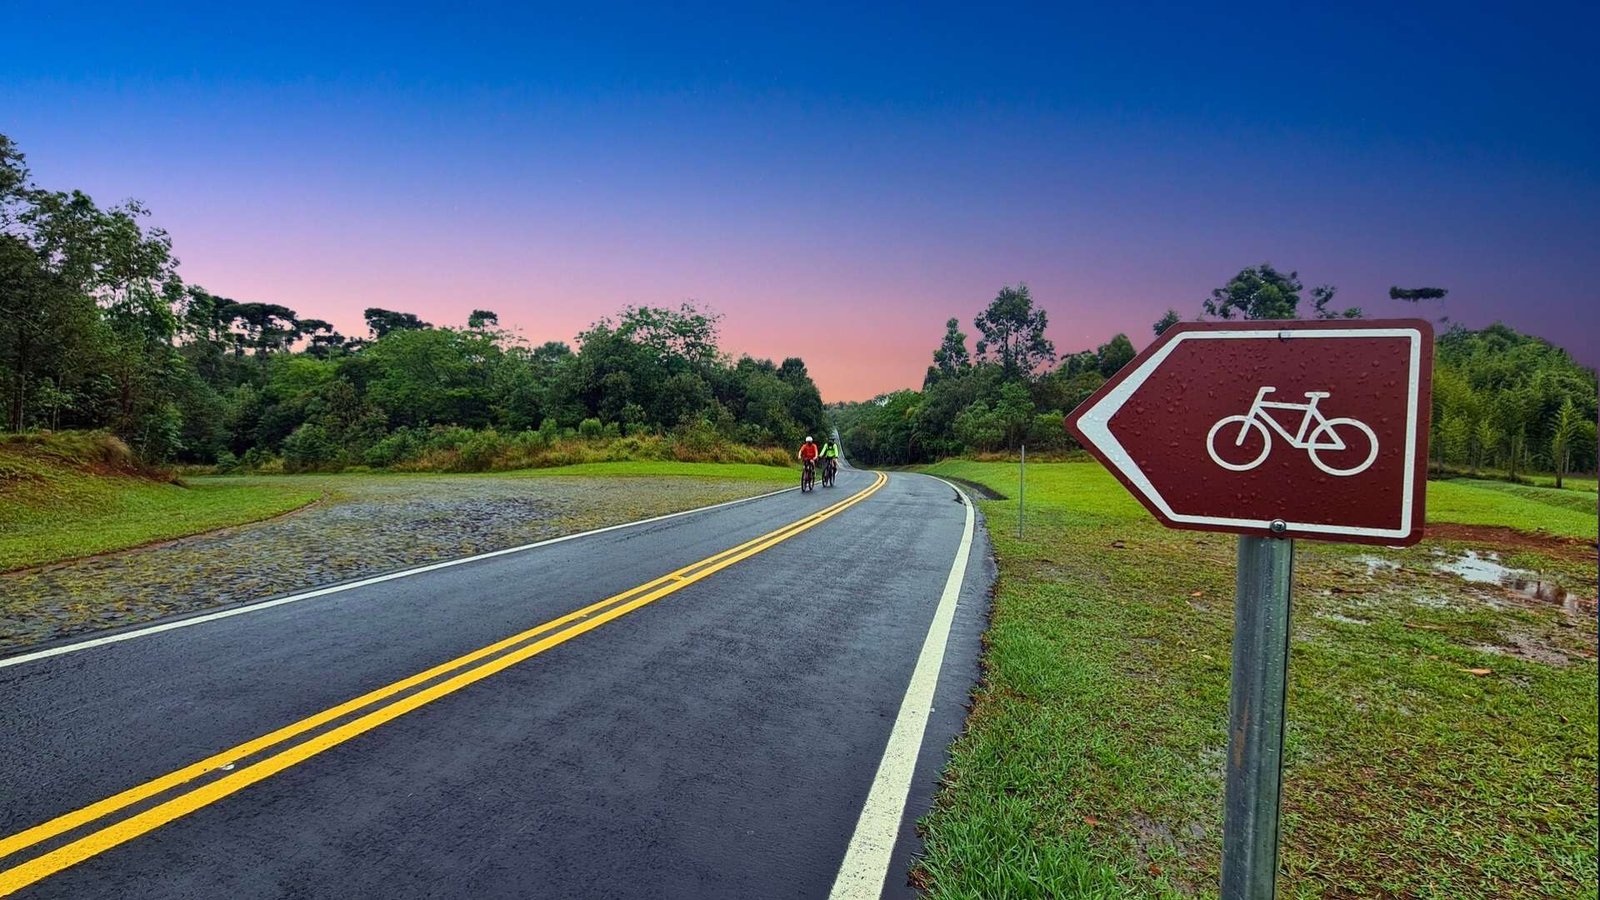 Cicloturistas viajando pelo Paraná com sinalização indicando os caminhos cicláveis, agora imagine o quanto o Edital de R$ 2 milhões para rotas de cicloturismo pode ajudar.